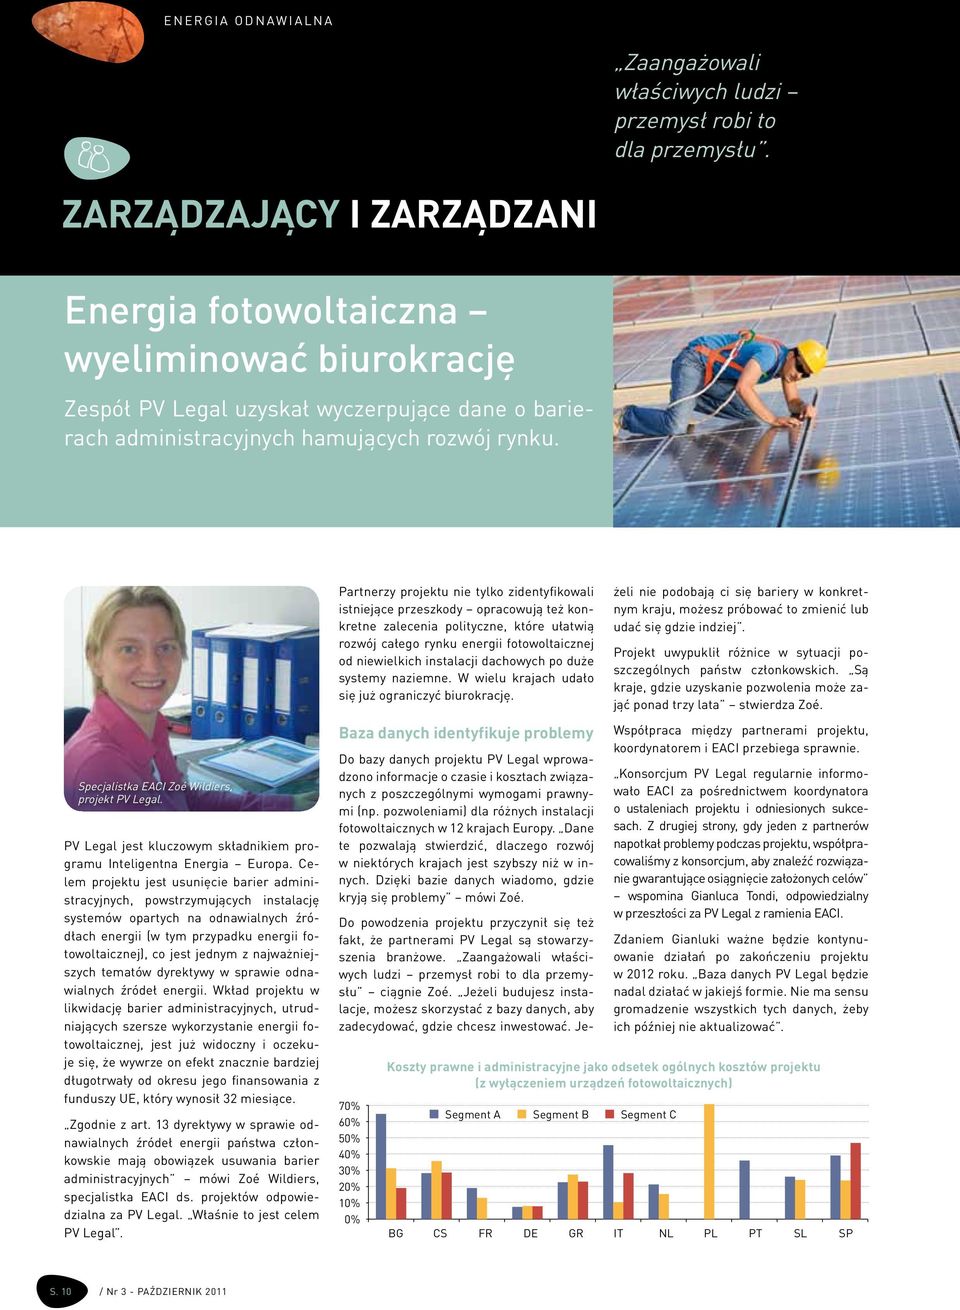 Specjalistka EACI Zoé Wildiers, projekt PV Legal. PV Legal jest kluczowym składnikiem programu Inteligentna Energia Europa.